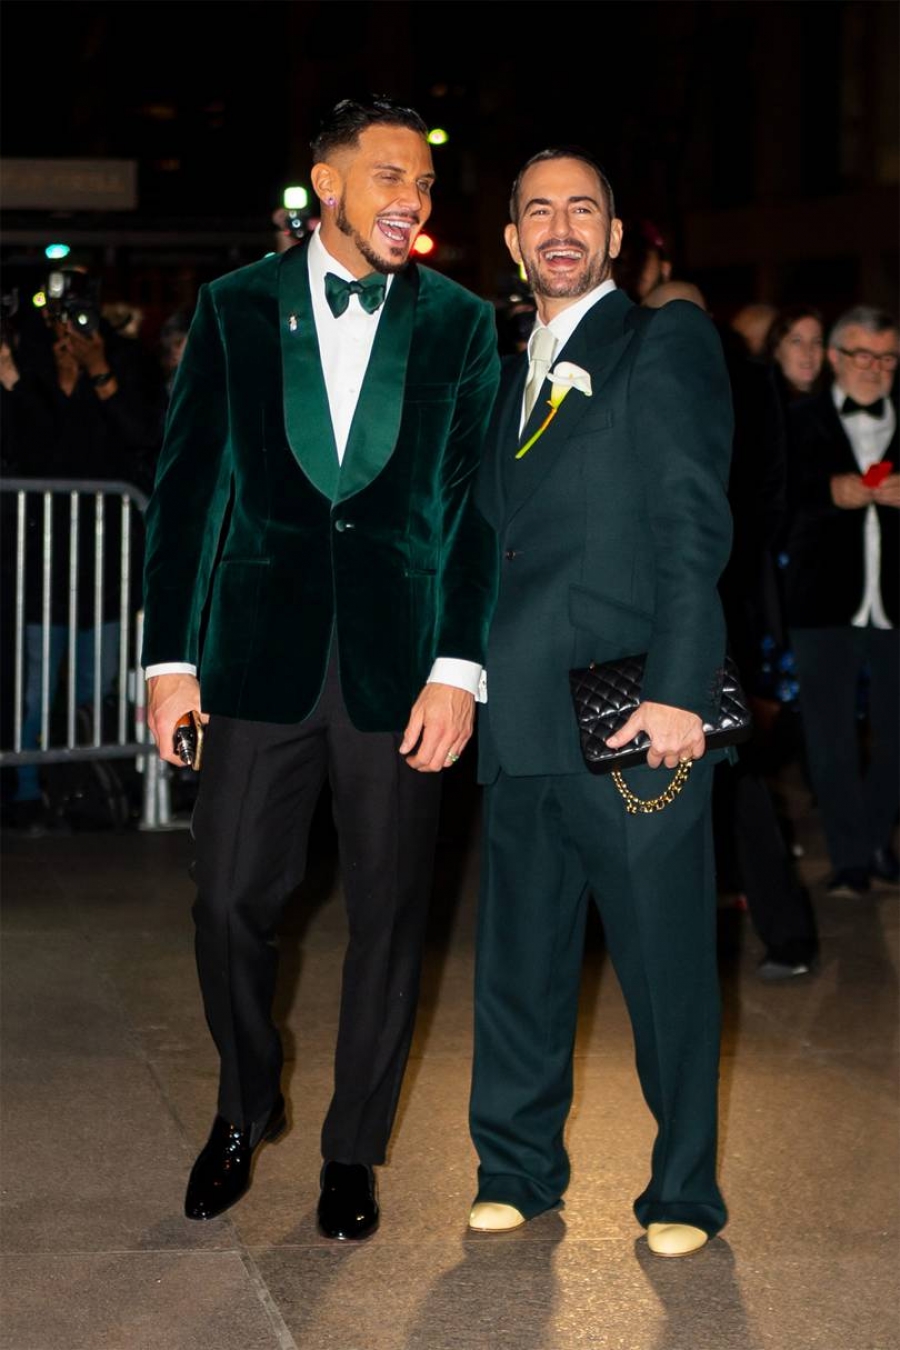 Οι καλύτερες εμφανίσεις των A-list σταρ στον γάμο του σχεδιαστή Marc Jacobs